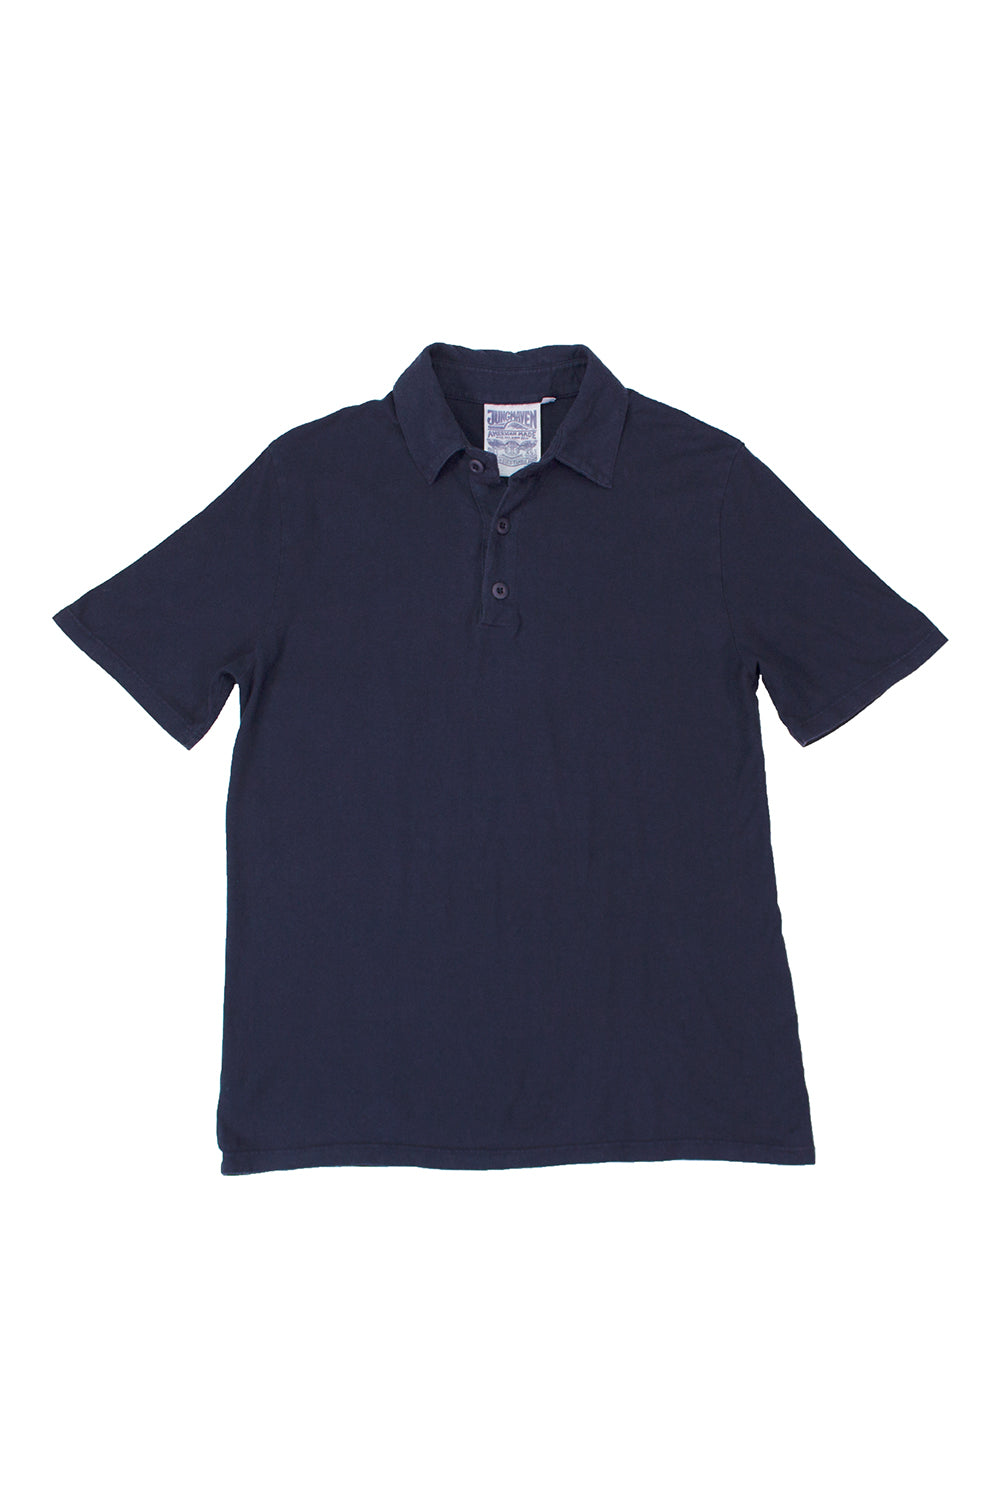 Camden Polo Shirt | Jungmaven Hemp Clothing & Accessories / Color: Navy